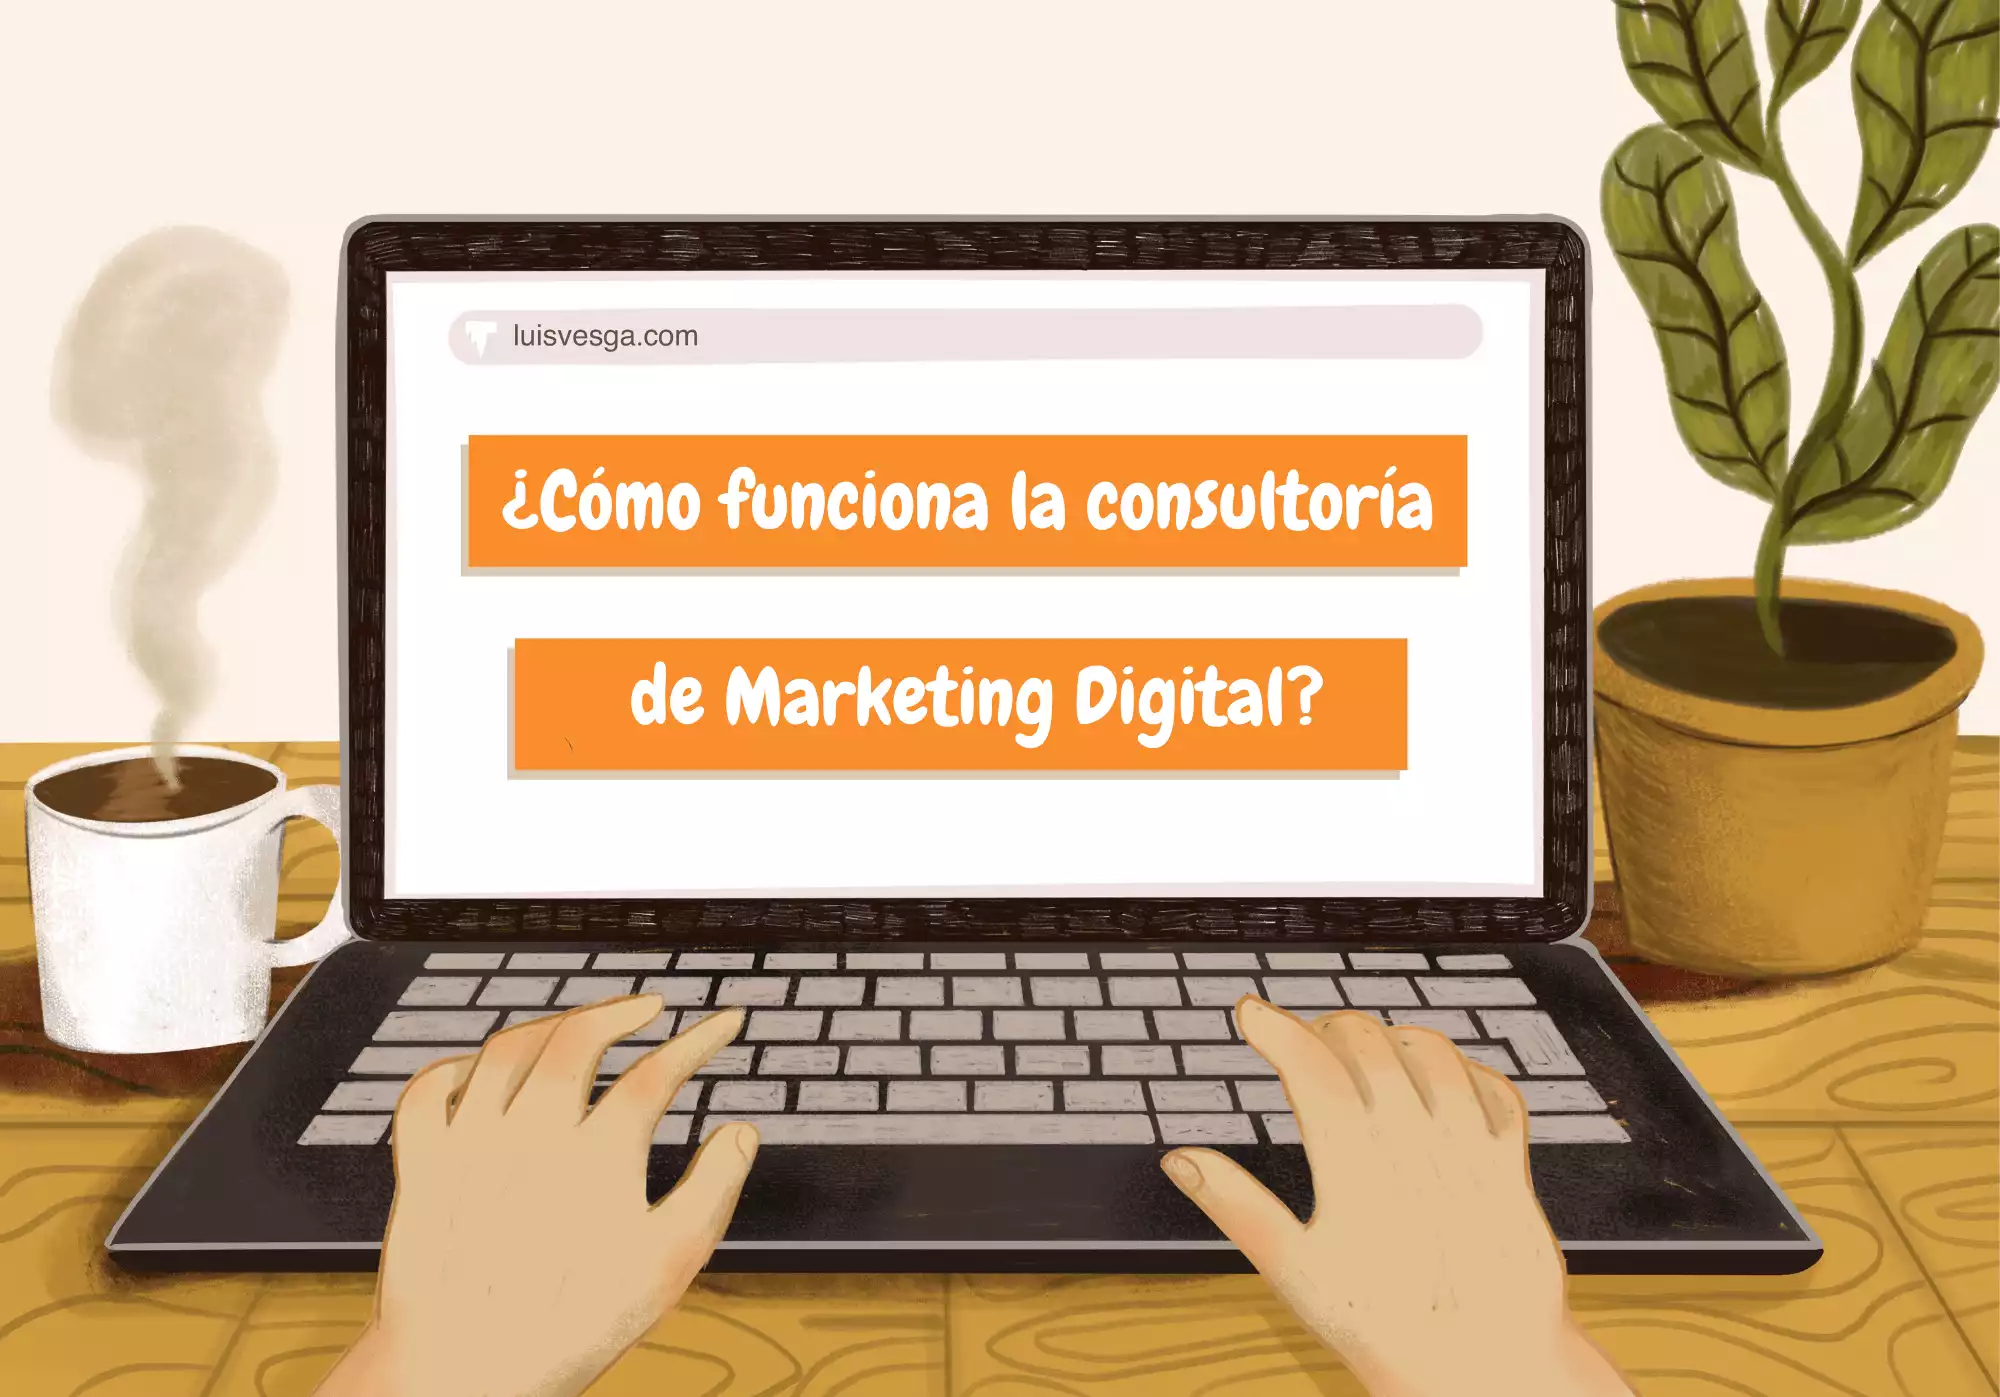 ¿Cómo funciona la consultoría de Marketing Digital? 🎯